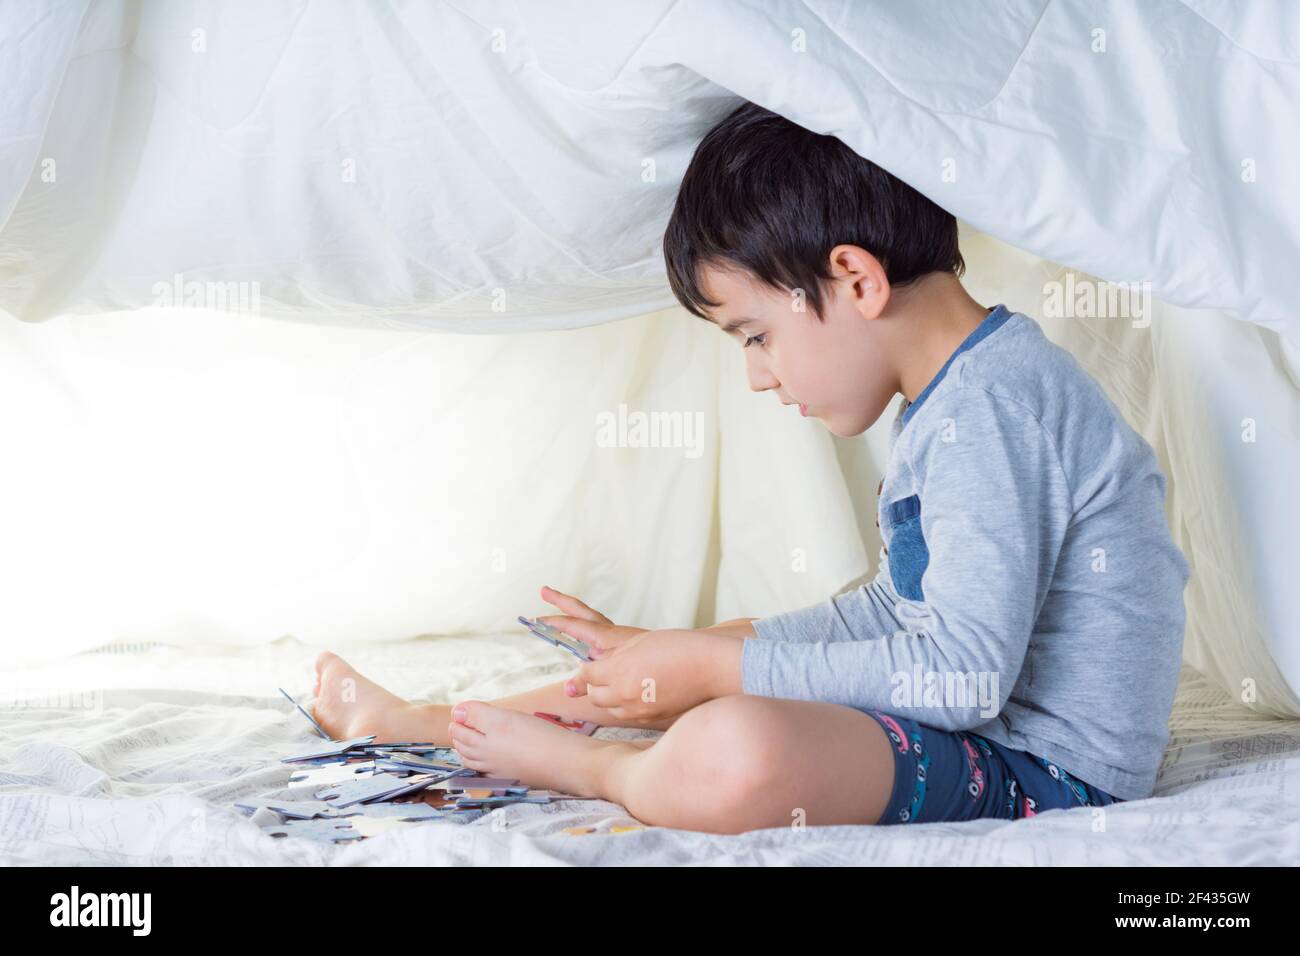 bambino che indossa pigiami dalle tonalità grigie in una tenda improvvisata con letto fogli che fanno un puzzle con sfondi bianchi e illuminazione soffusa Foto Stock